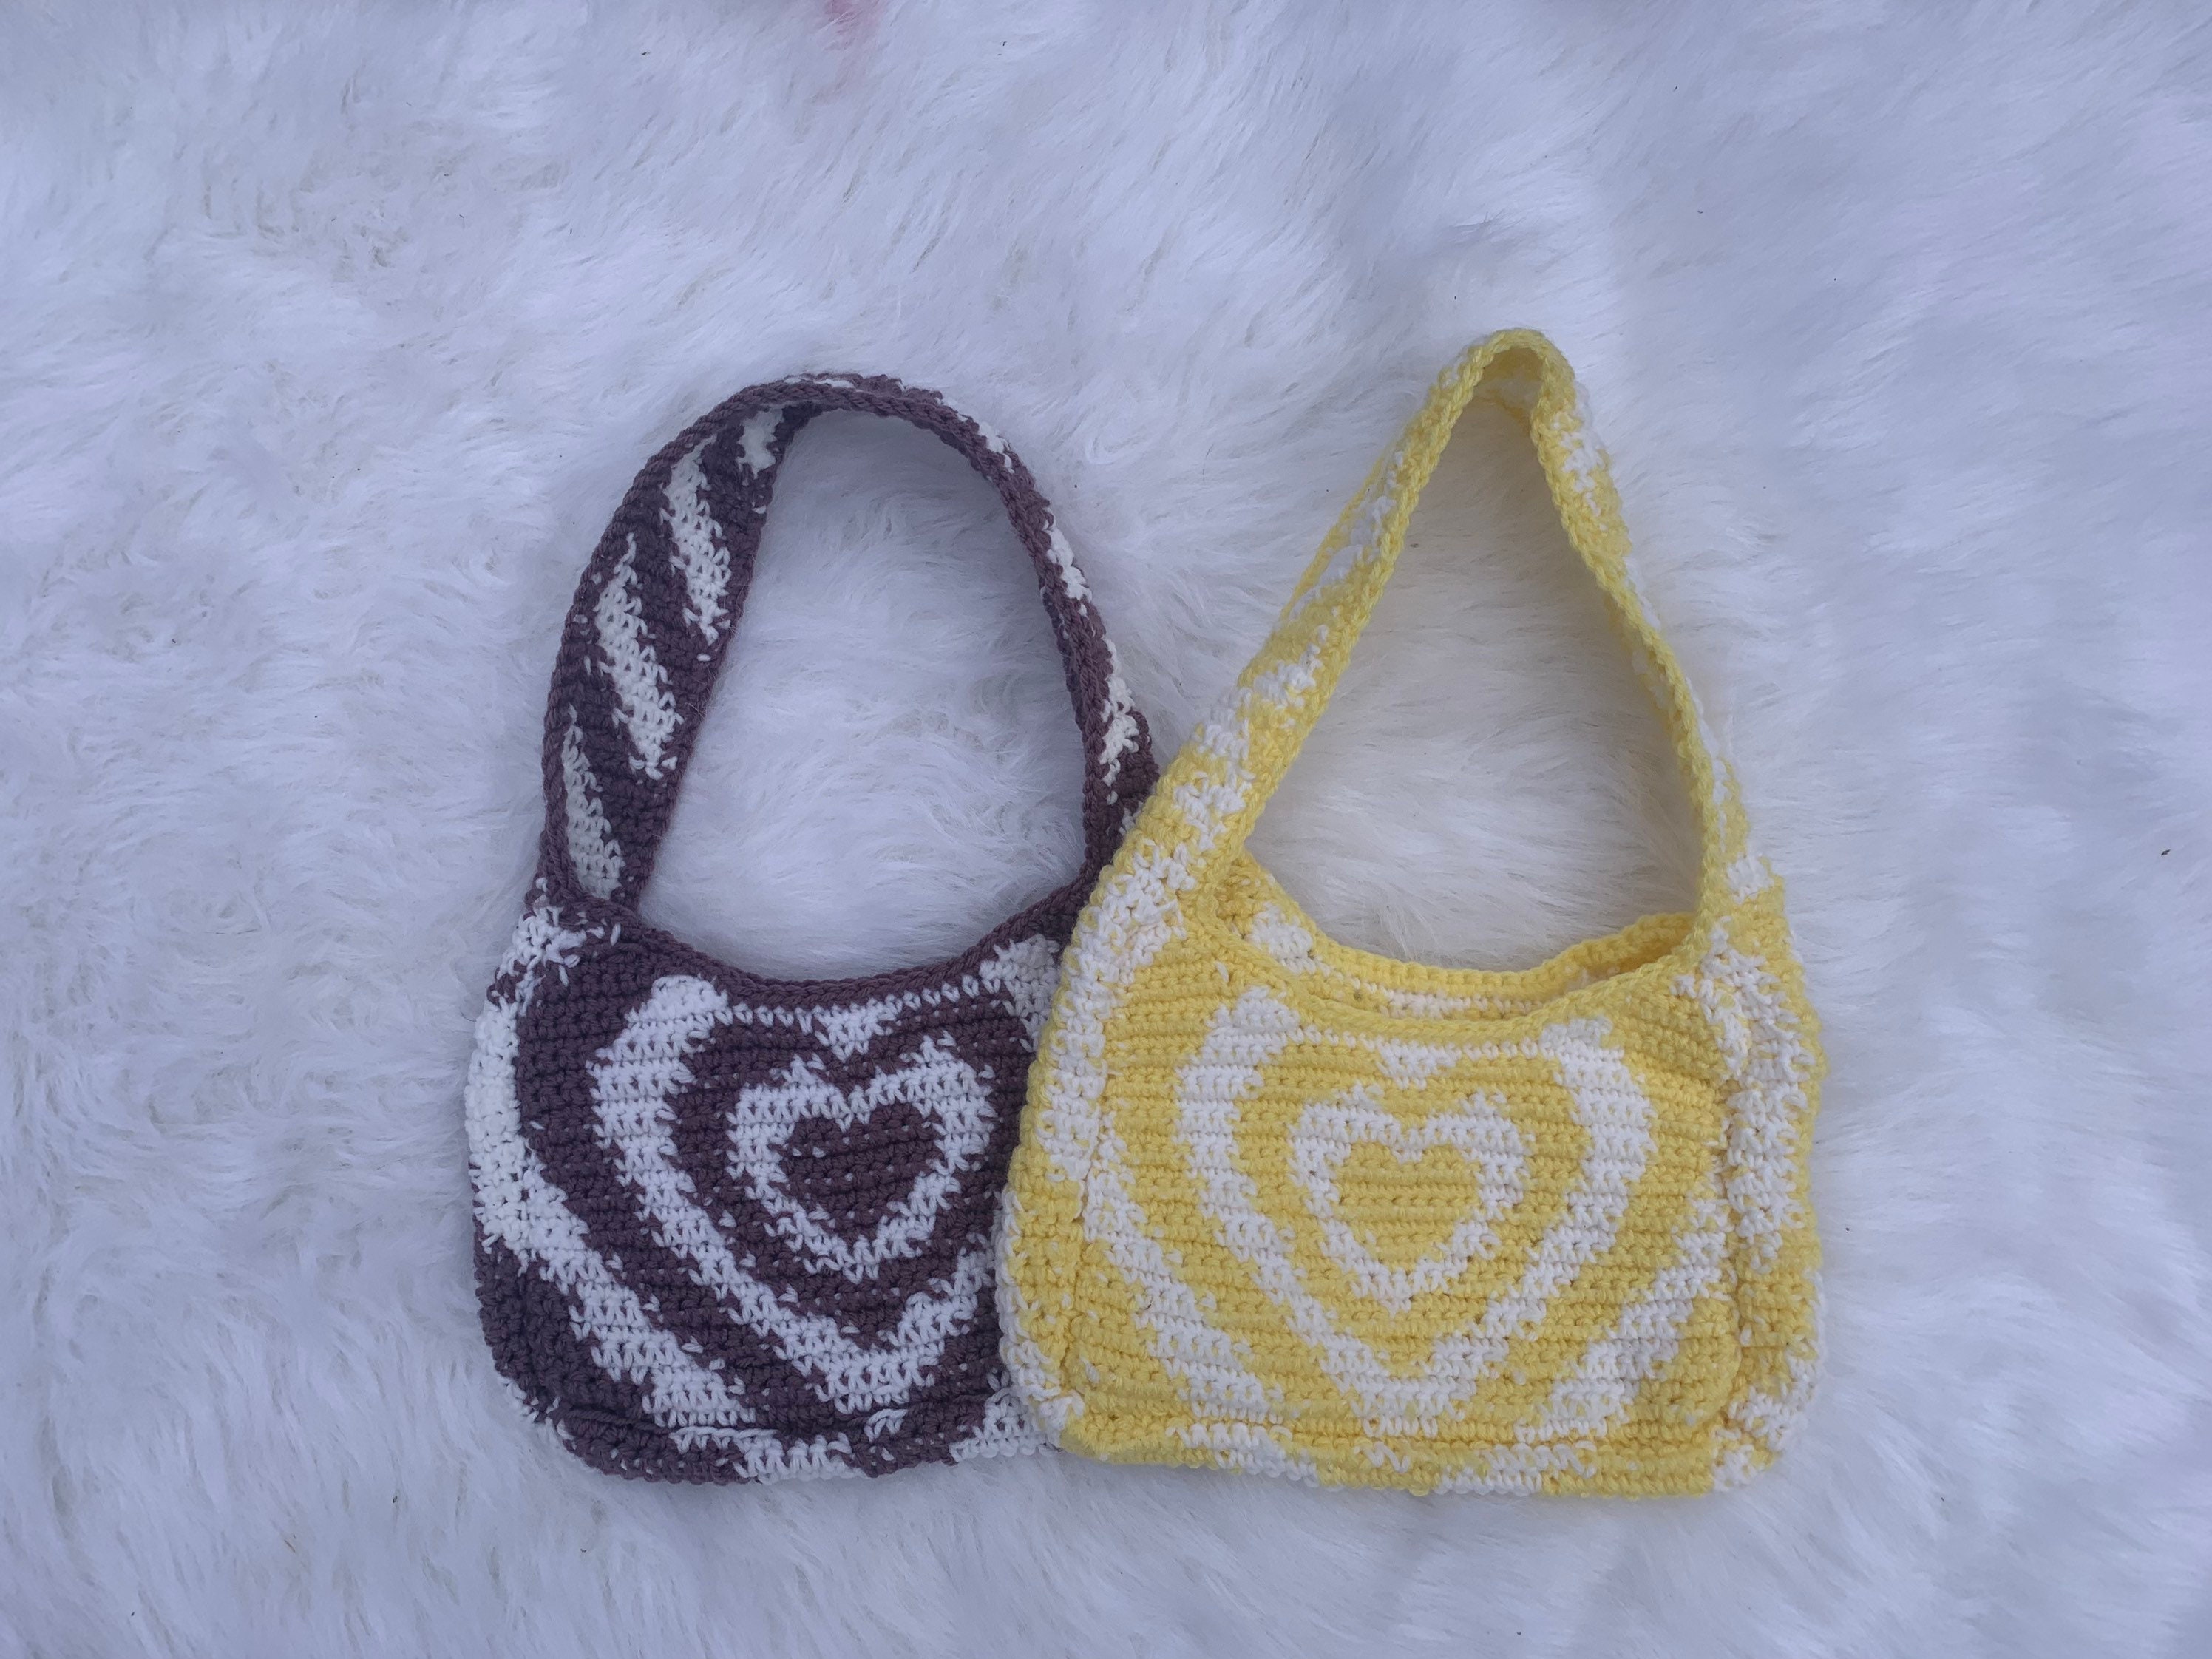 Crochet Heart Power Puff Bag –